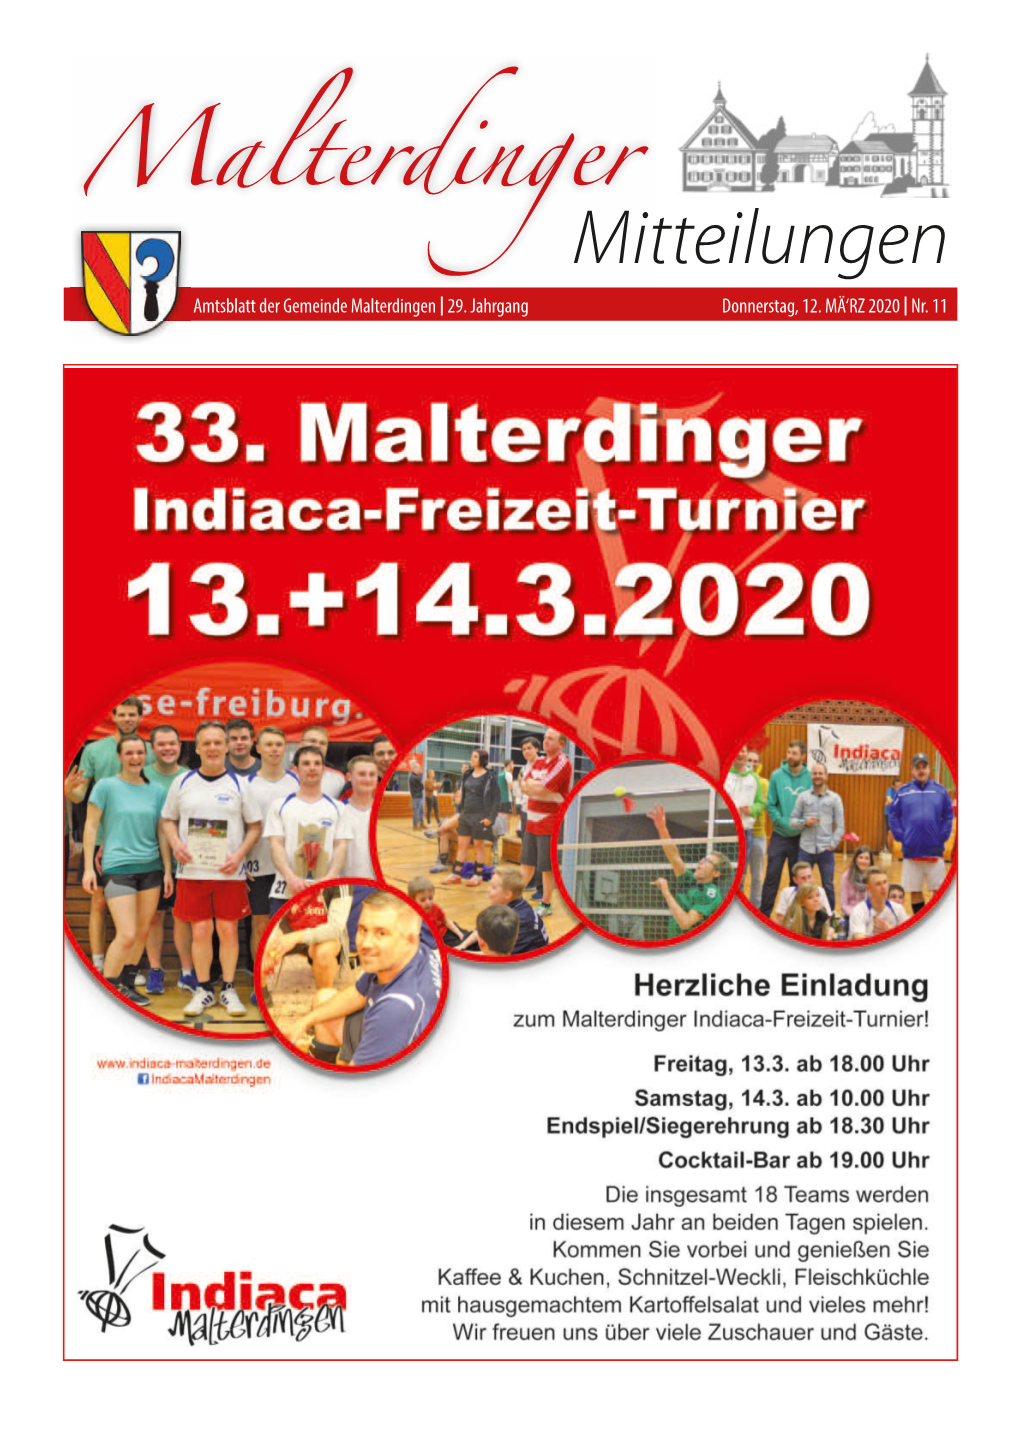 Mitteilungsblatt Nr. 11 Vom 12. März 2020 (PDF)